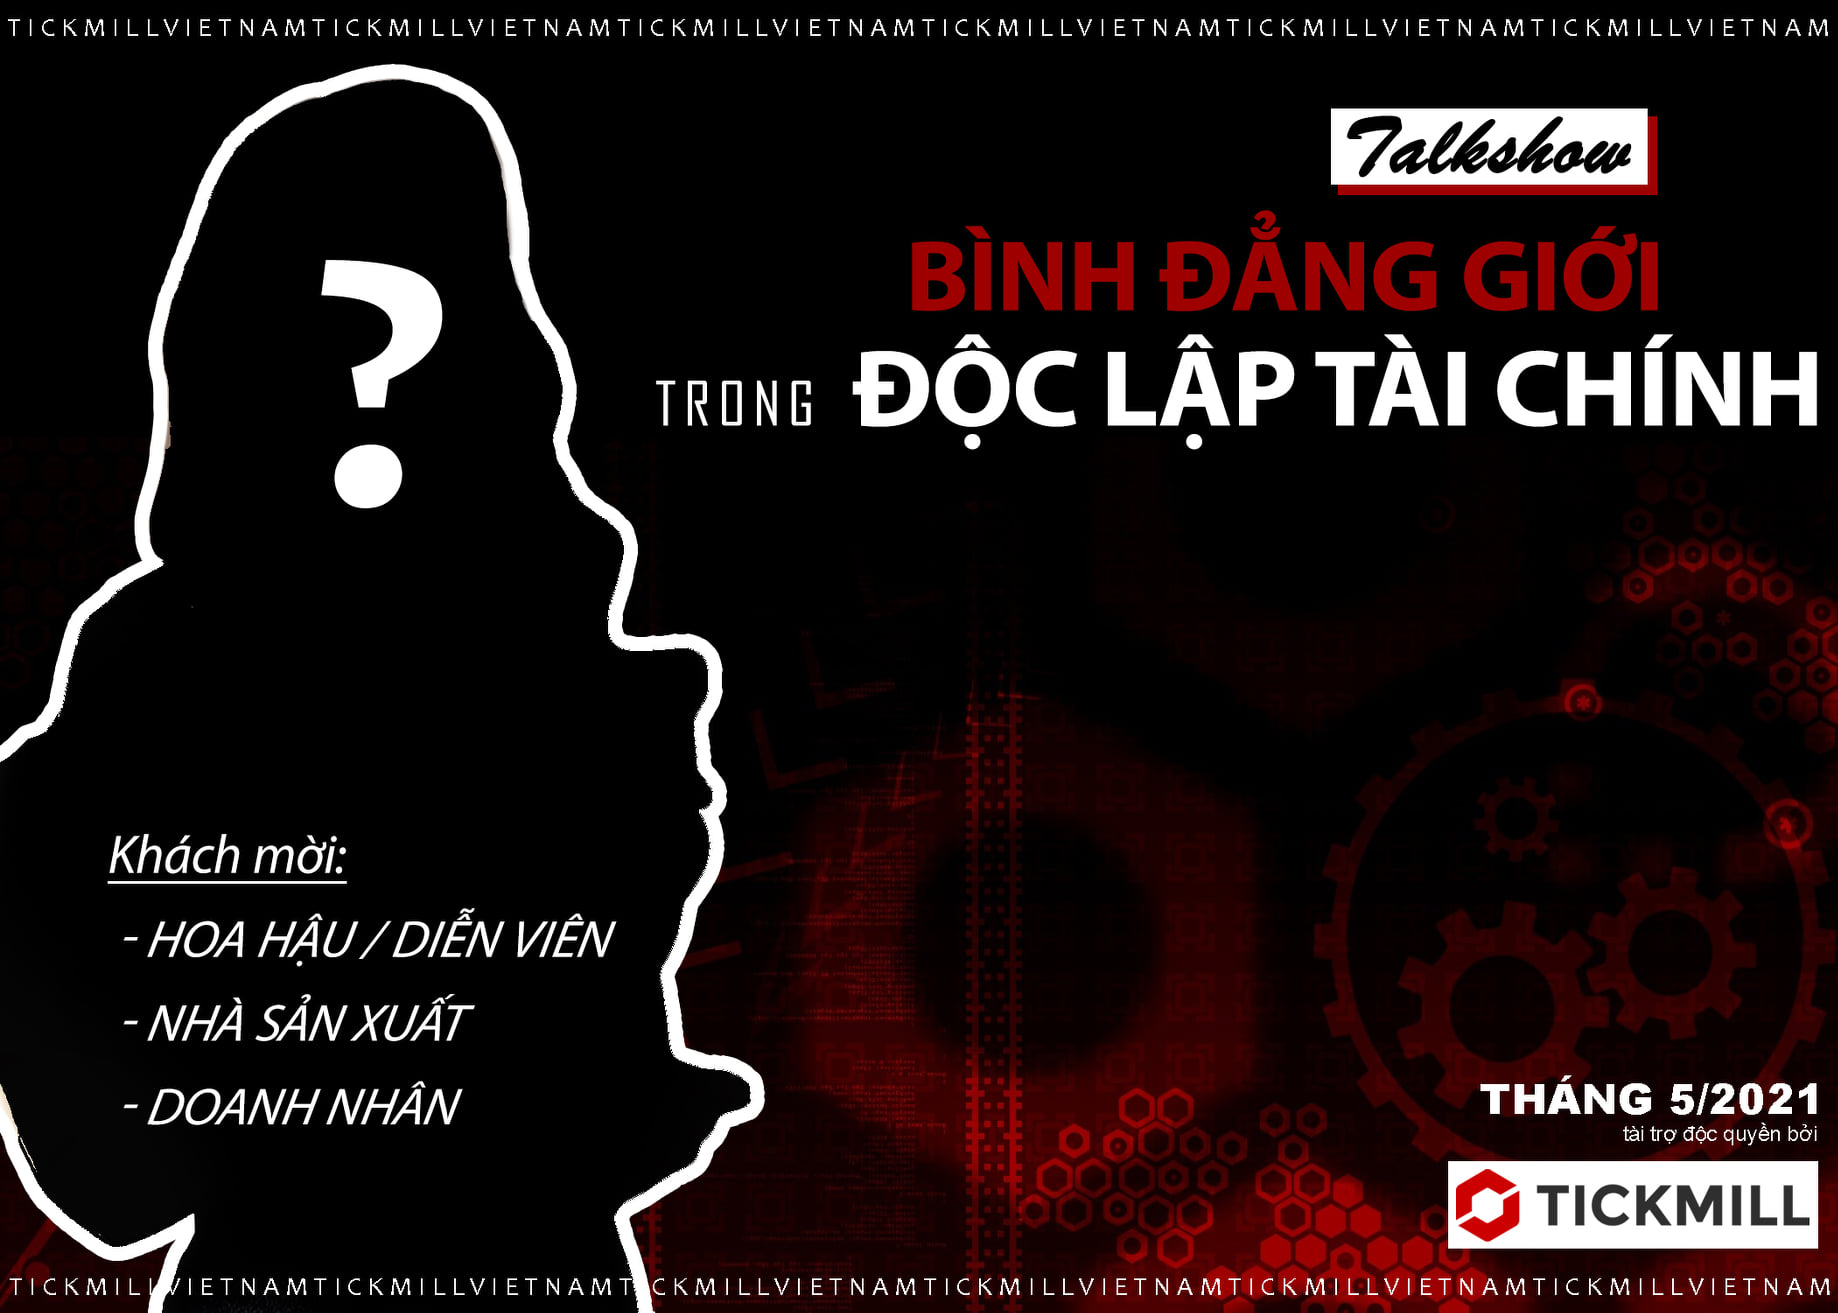 Một sự kiện "SIÊU HOT" sắp được diễn ra tại Tickmill Việt Nam trong tháng 5!